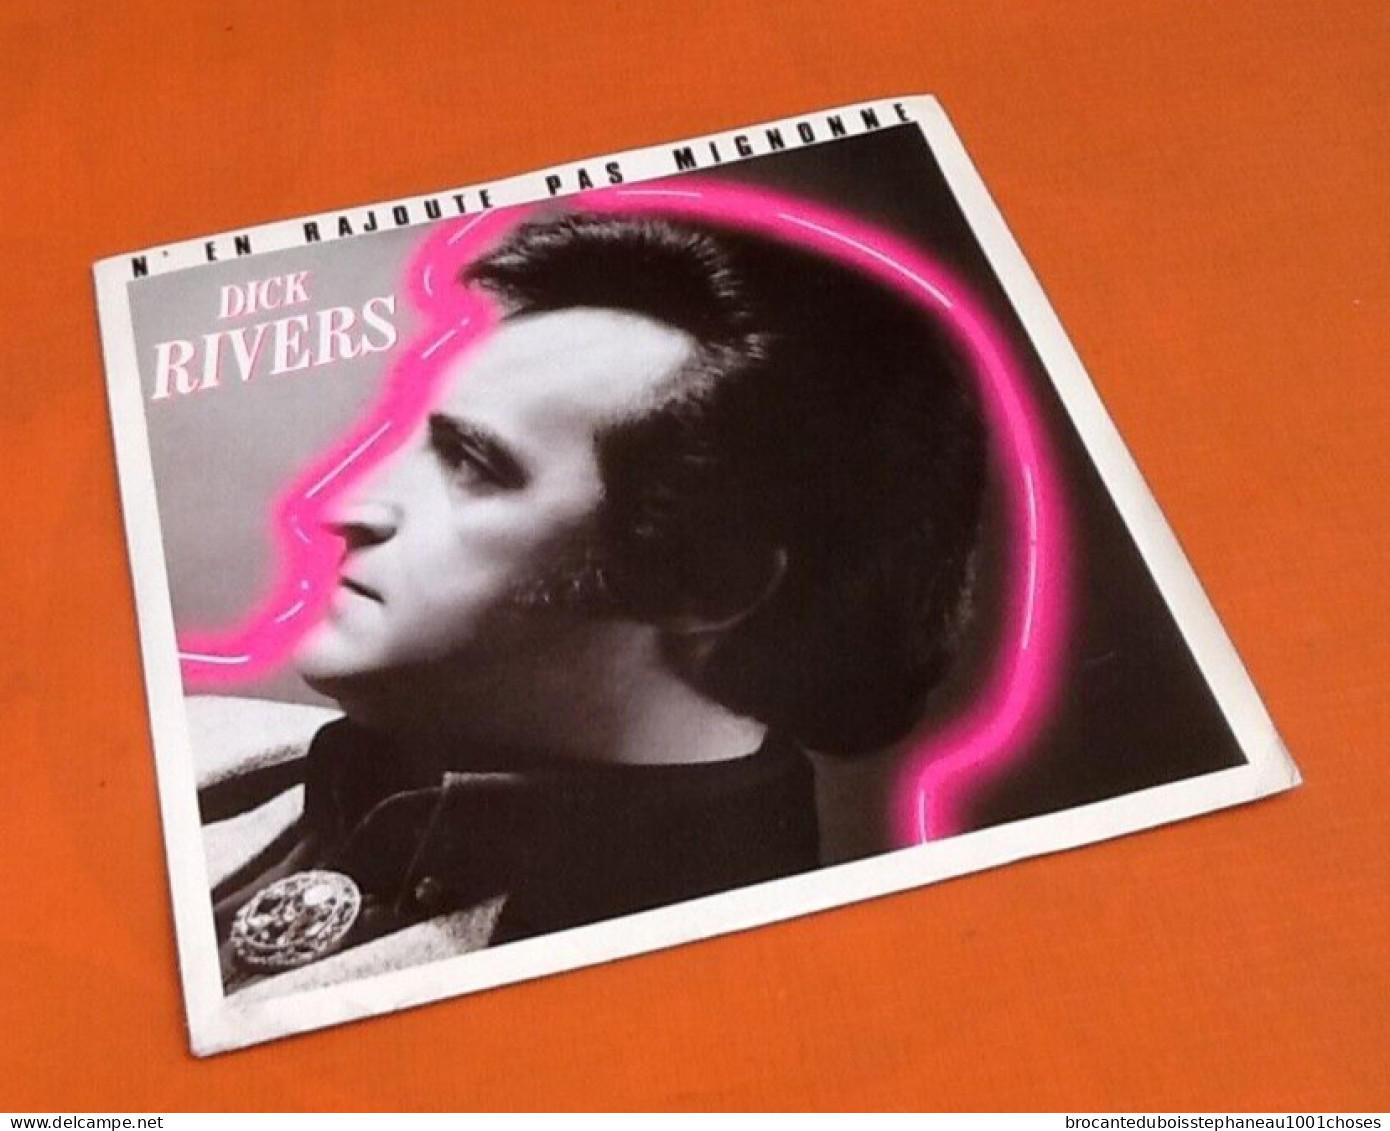 Vinyle 45 Tours  Dick Rivers ( Disque Promotionnel) N' En Rajoute Pas Mignonne (1986) - Rock